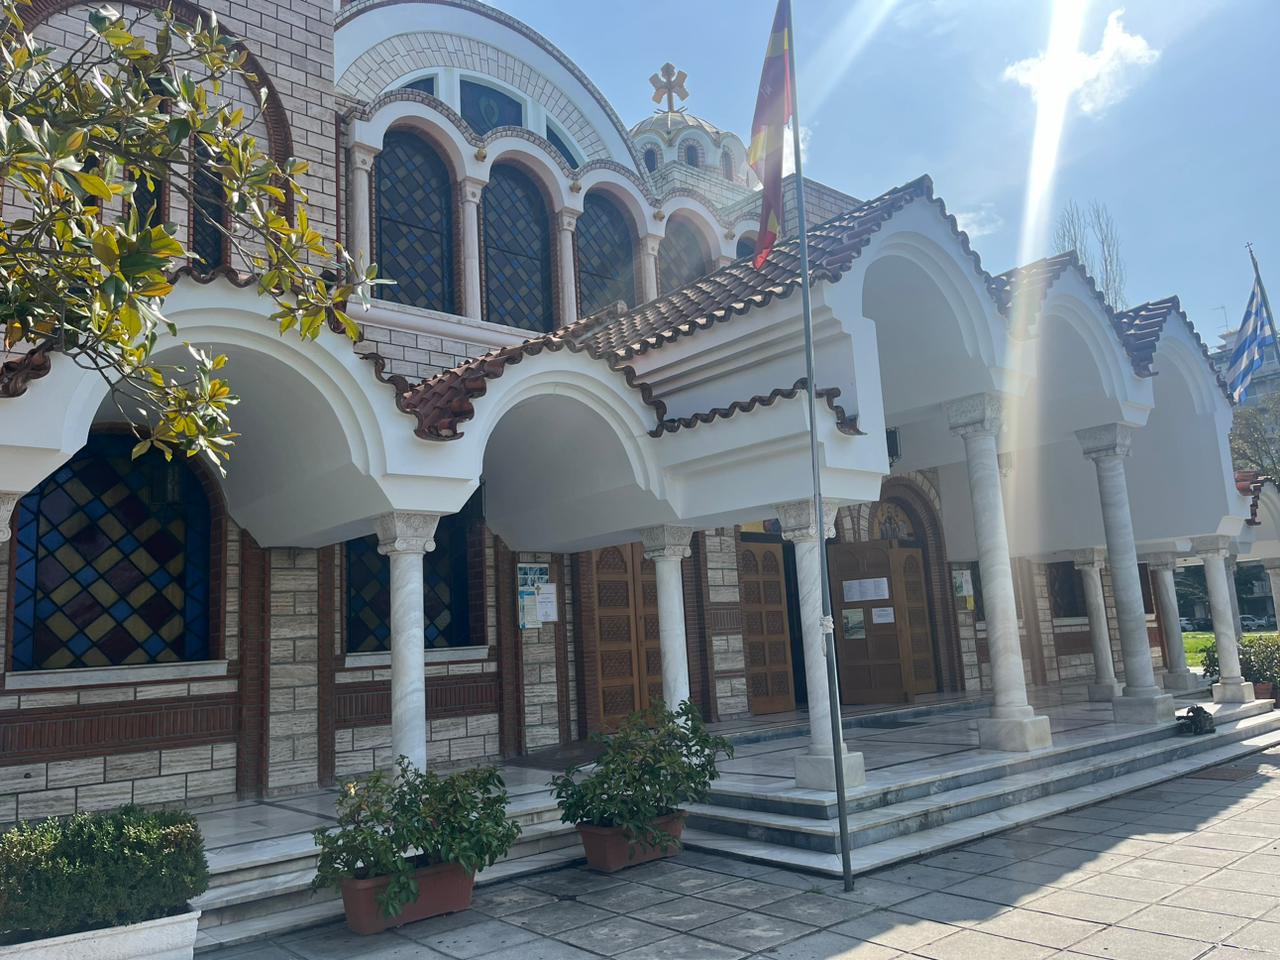 Θεσσαλονίκη: «Αν φοβόμουν δεν θα βρισκόμουν τώρα στην εκκλησία» λέει στο newsit.gr o αρχιμανδρίτης